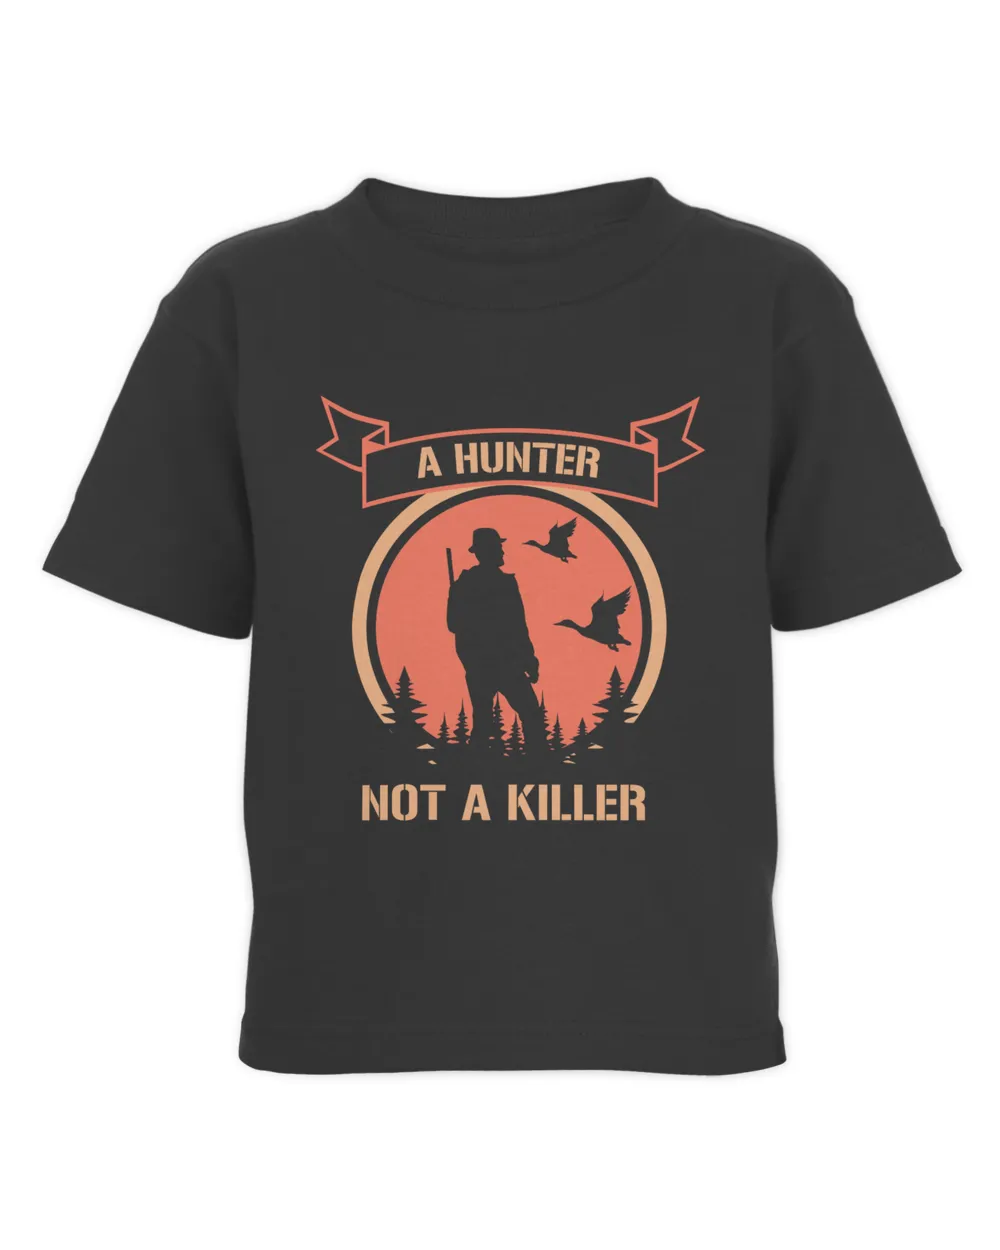 A Hunter Not a Killer